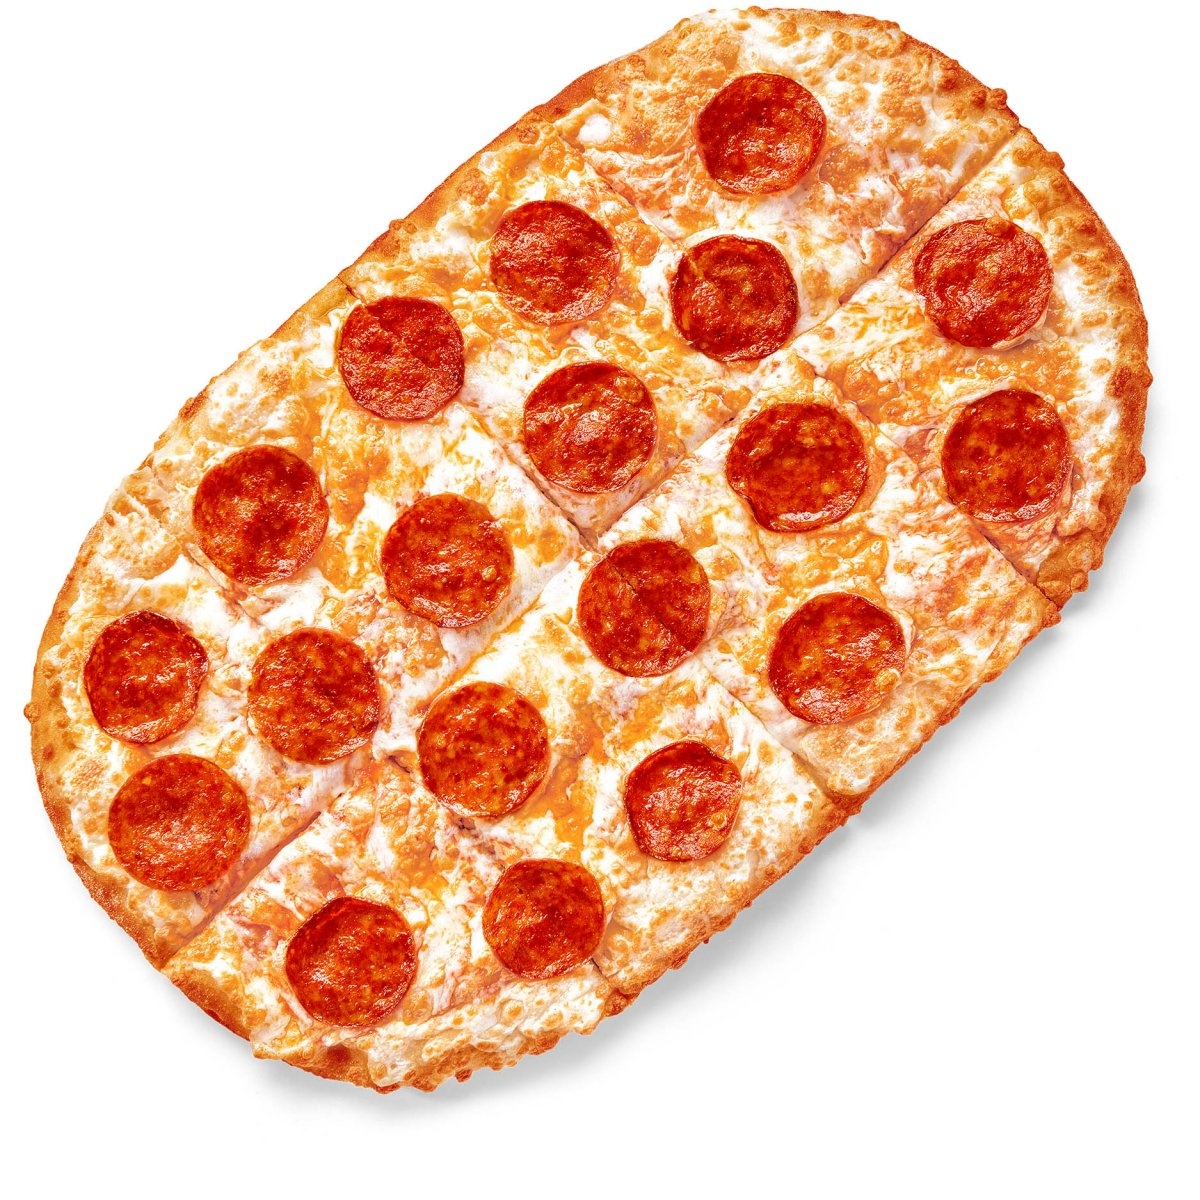 фото пицца додо пепперони фото 73